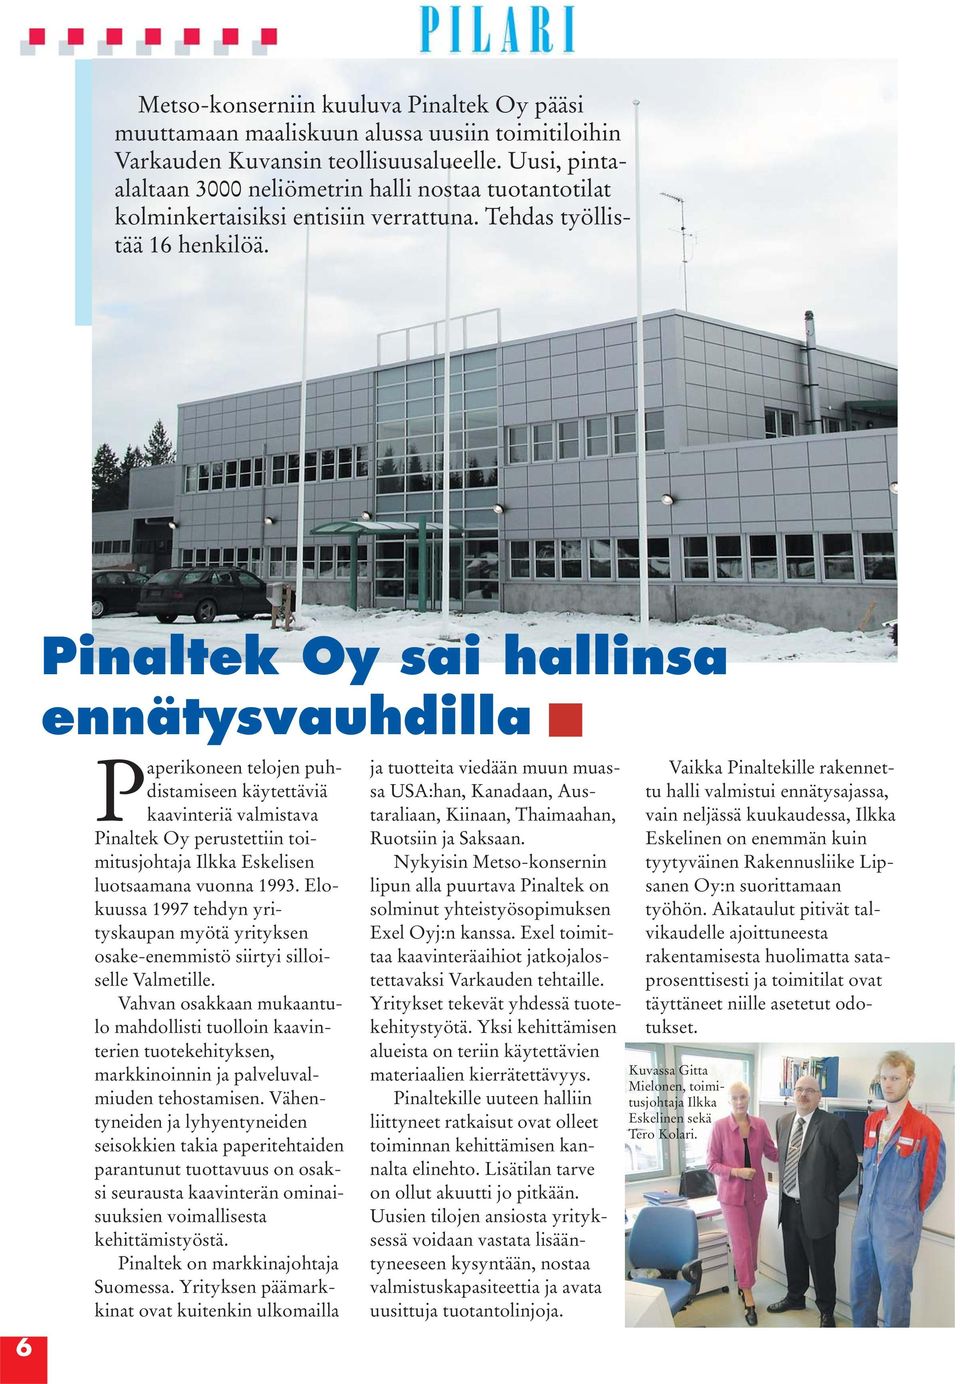 6 Pinaltek Oy sai hallinsa ennätysvauhdilla Paperikoneen telojen puhdistamiseen käytettäviä kaavinteriä valmistava Pinaltek Oy perustettiin toimitusjohtaja Ilkka Eskelisen luotsaamana vuonna 1993.